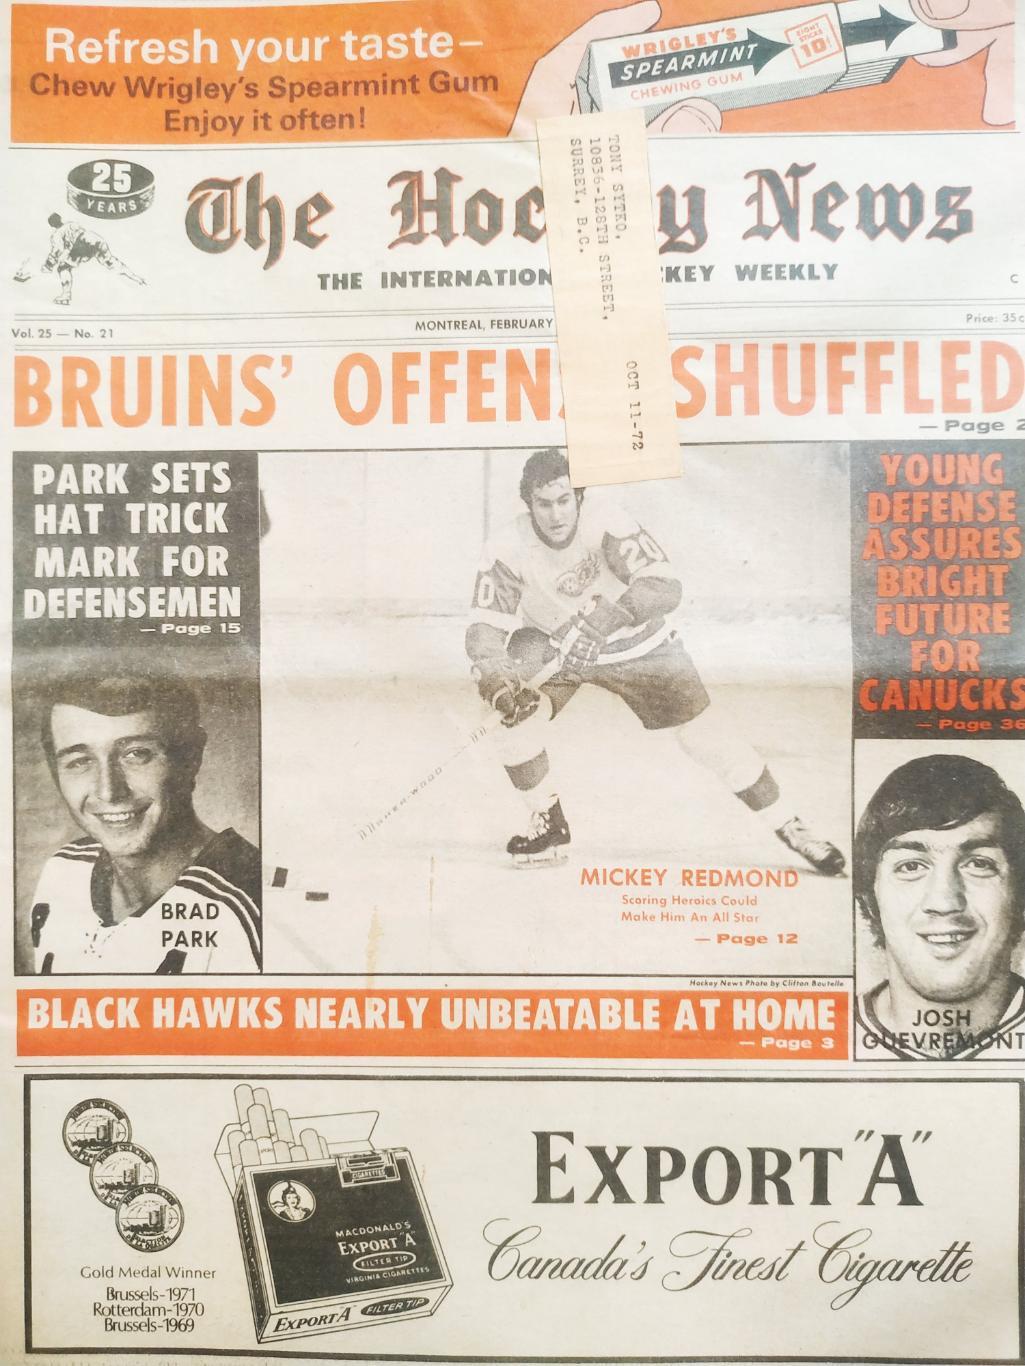 ХОККЕЙ ЖУРНАЛ ЕЖЕНЕДЕЛЬНИК НХЛ НОВОСТИ ХОККЕЯ FEB.25 1972 NHL THE HOCKEY NEWS